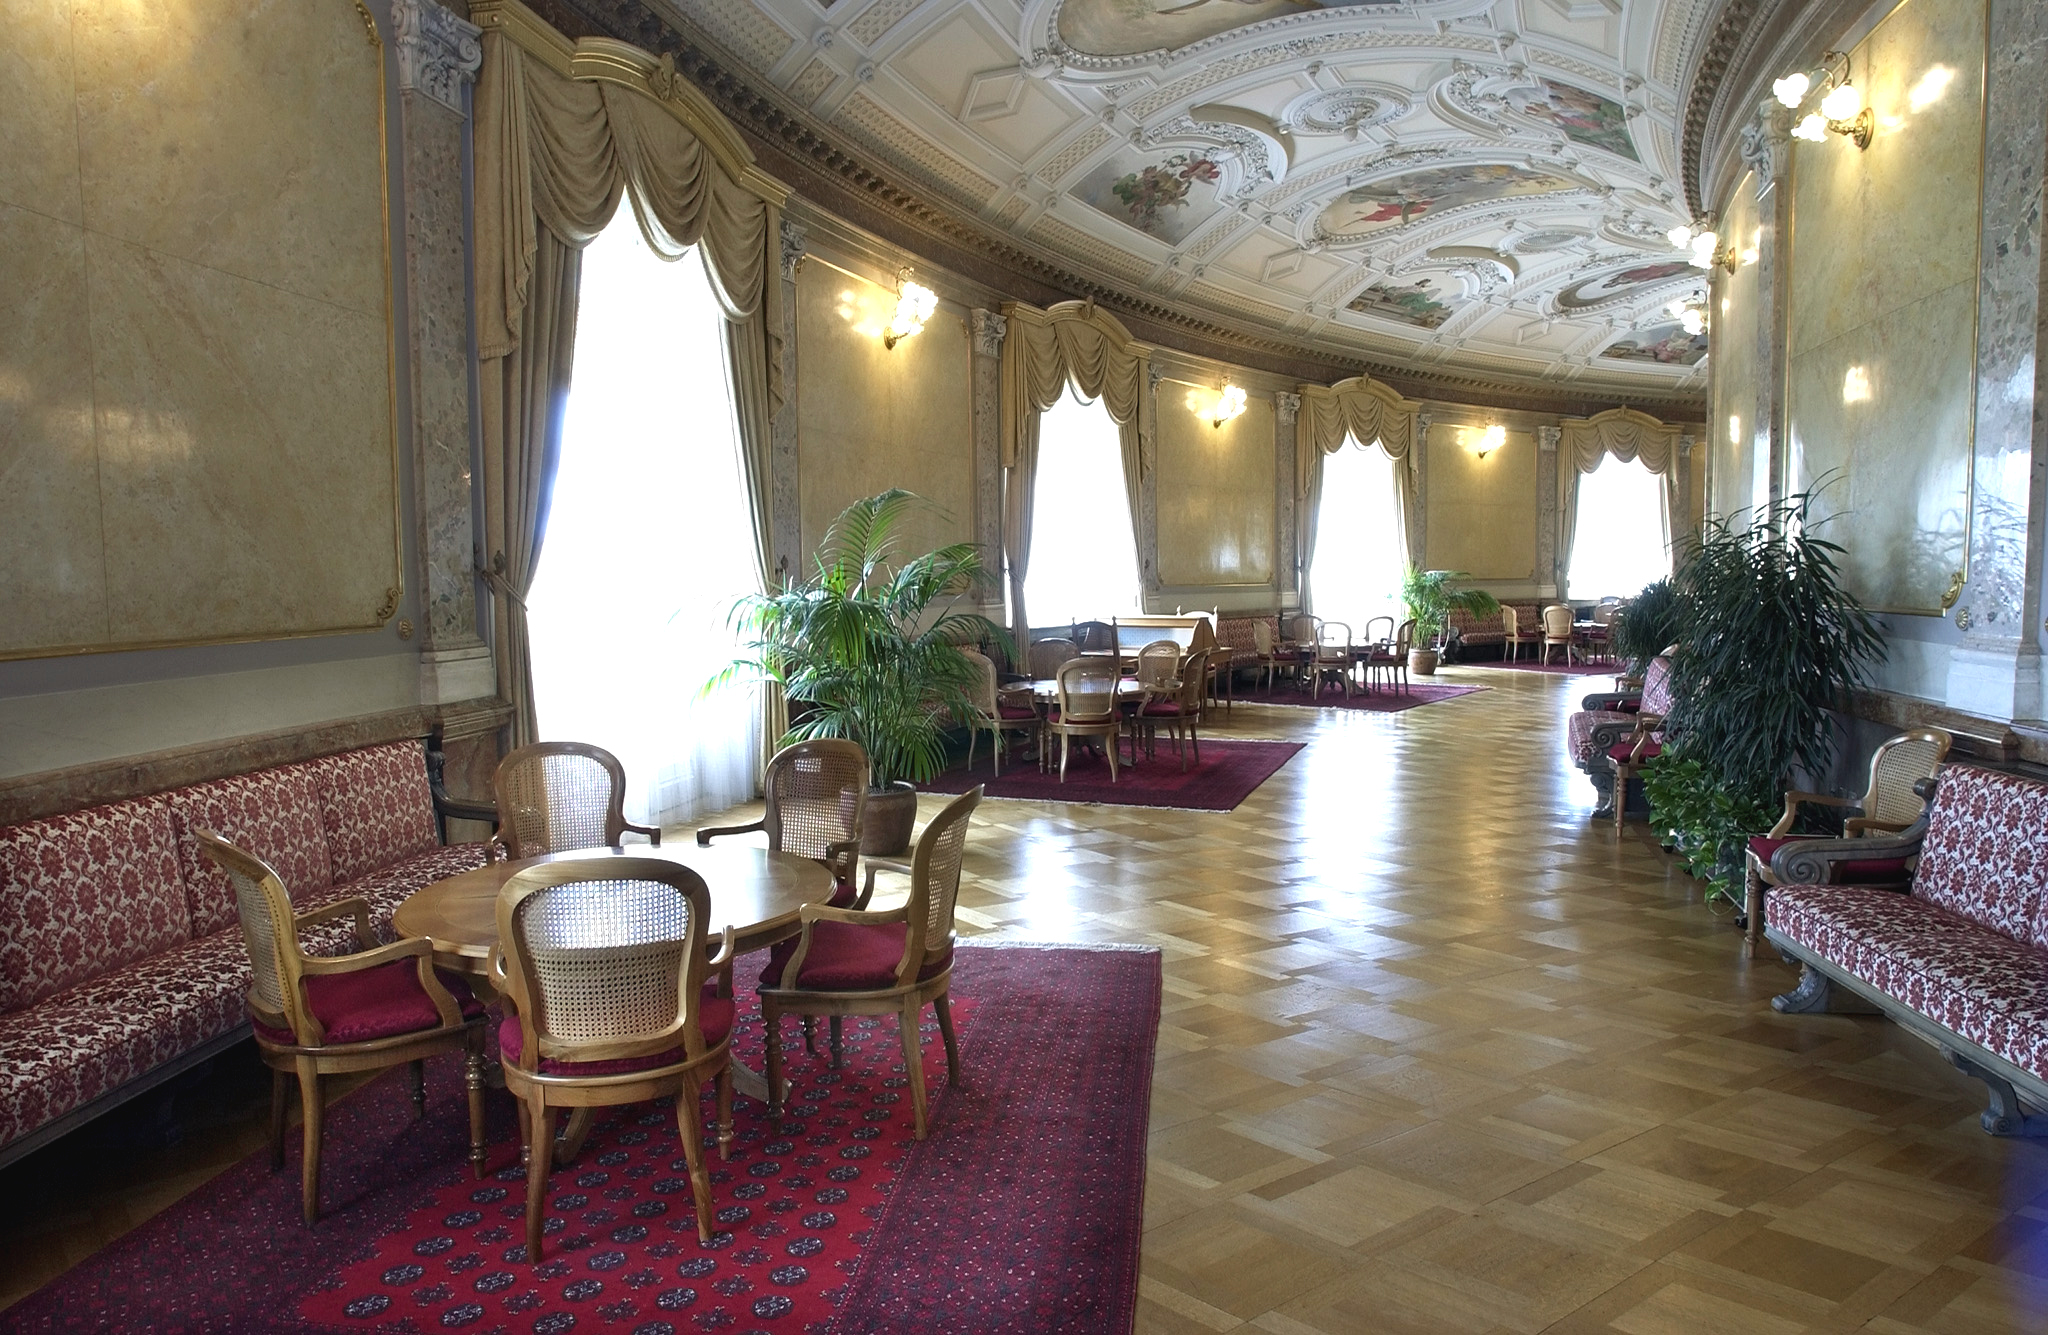 Lobby Hall - Foto retirada do site Schweizer Parlament